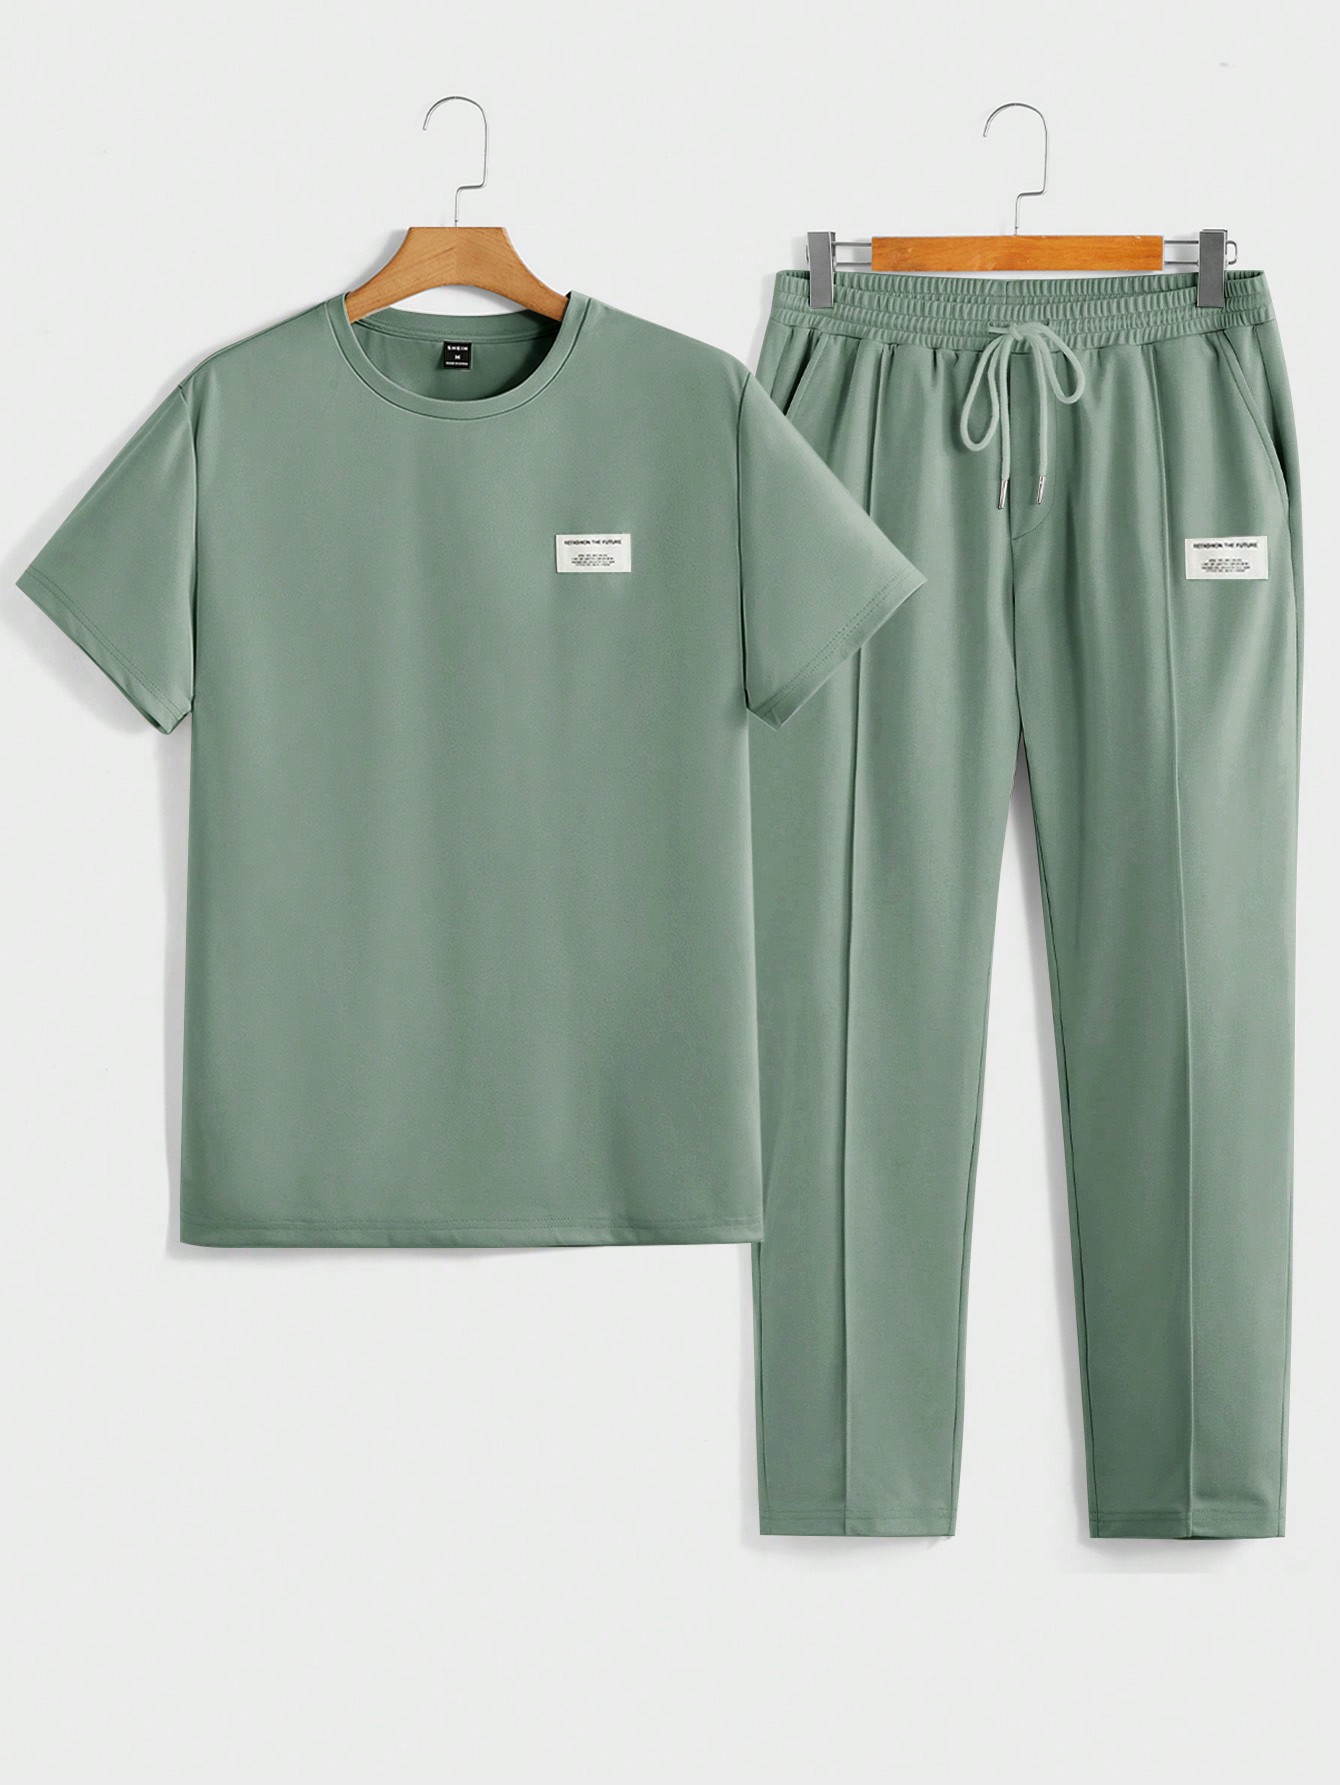 цена Мужская футболка с короткими рукавами и трикотажными повседневными брюками Manfinity Homme с надписью и нашивкой, зеленый